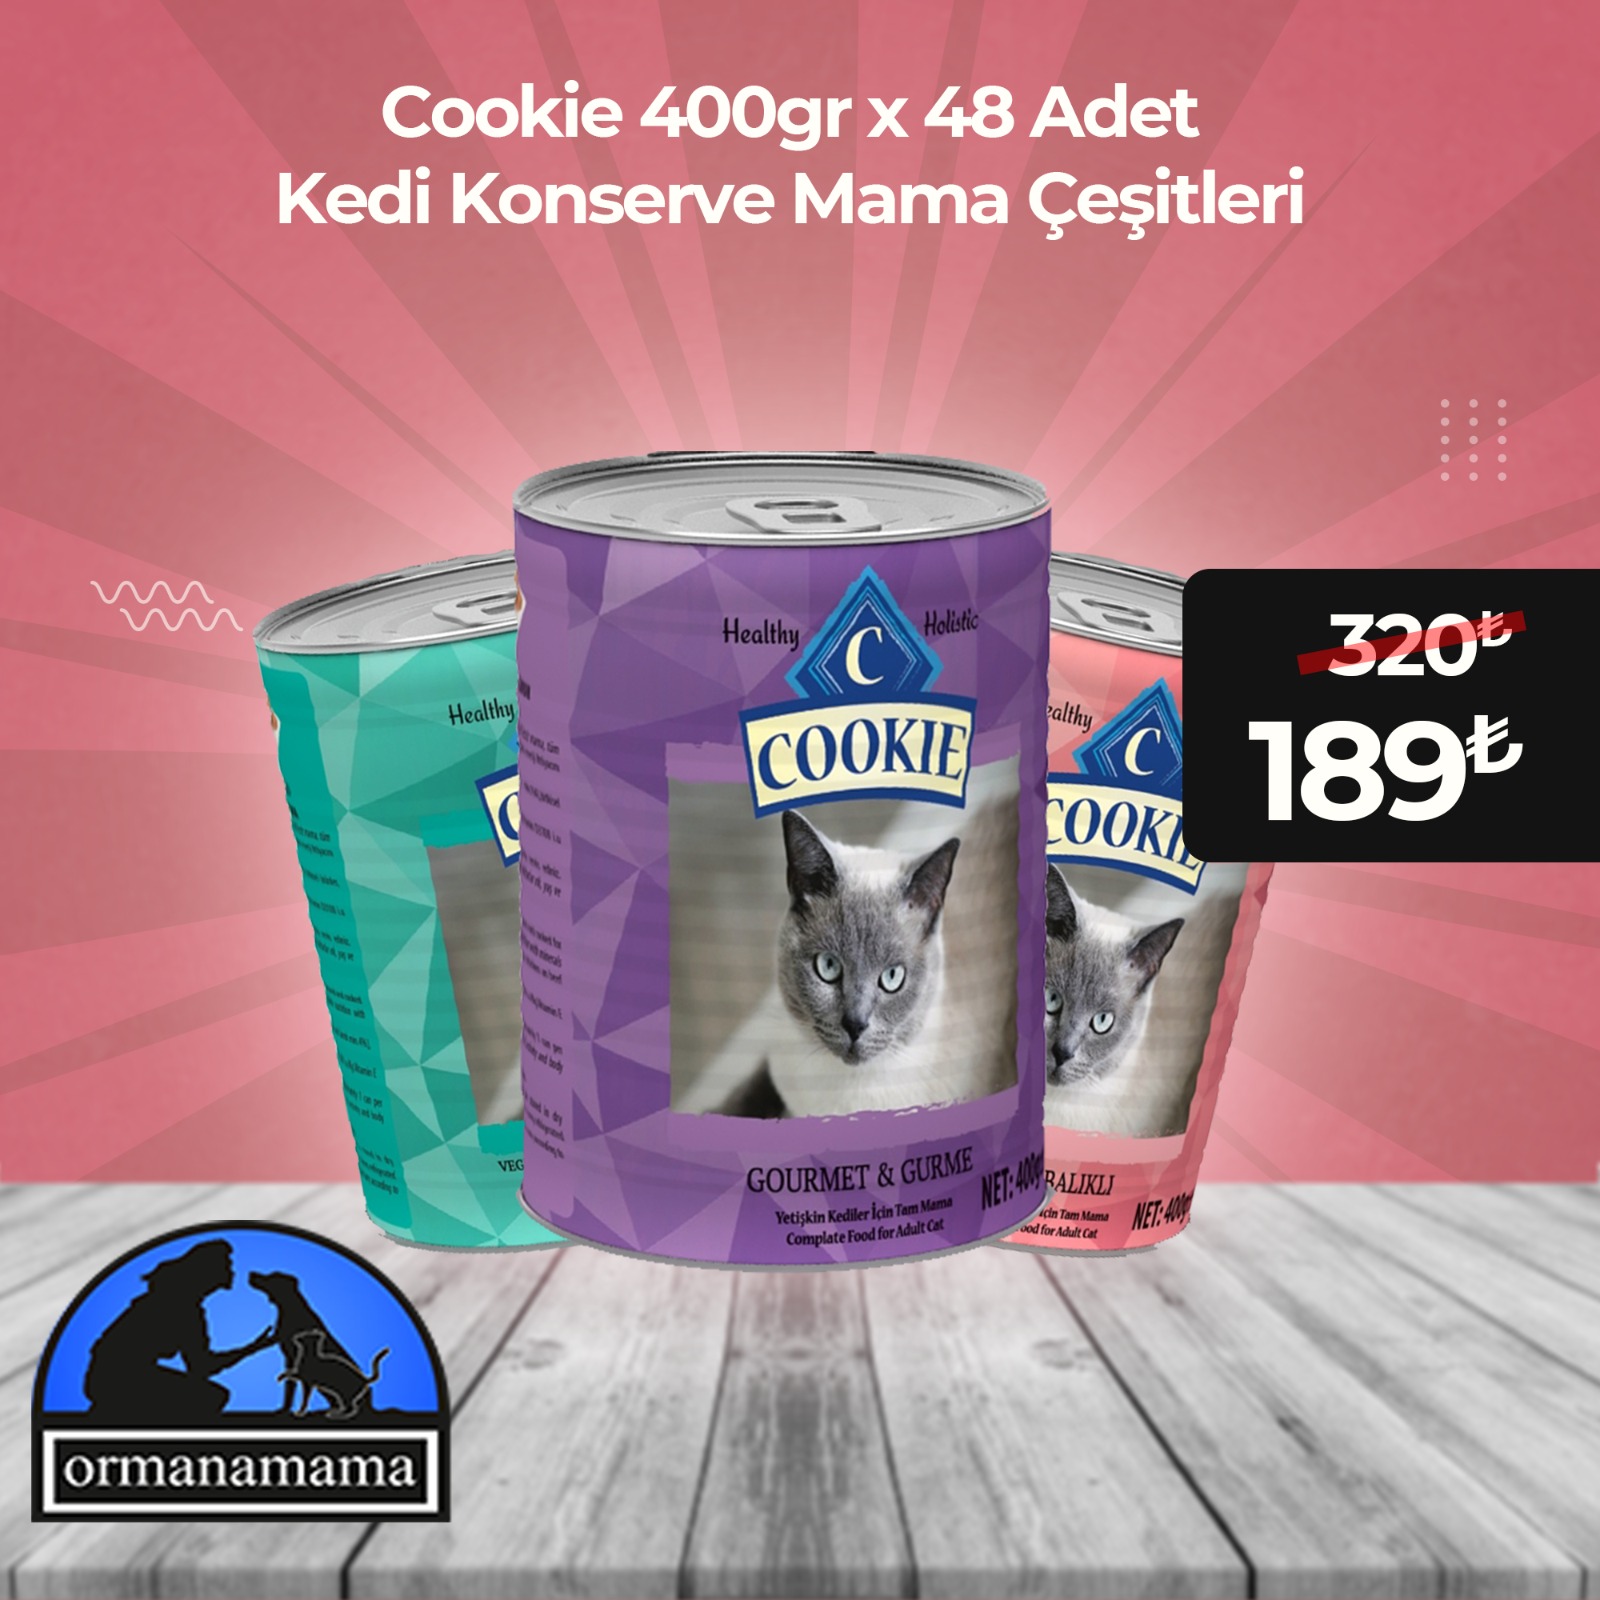 Cookie Kedi Konserve Mama Çeşitleri 400gr x 48 Adet